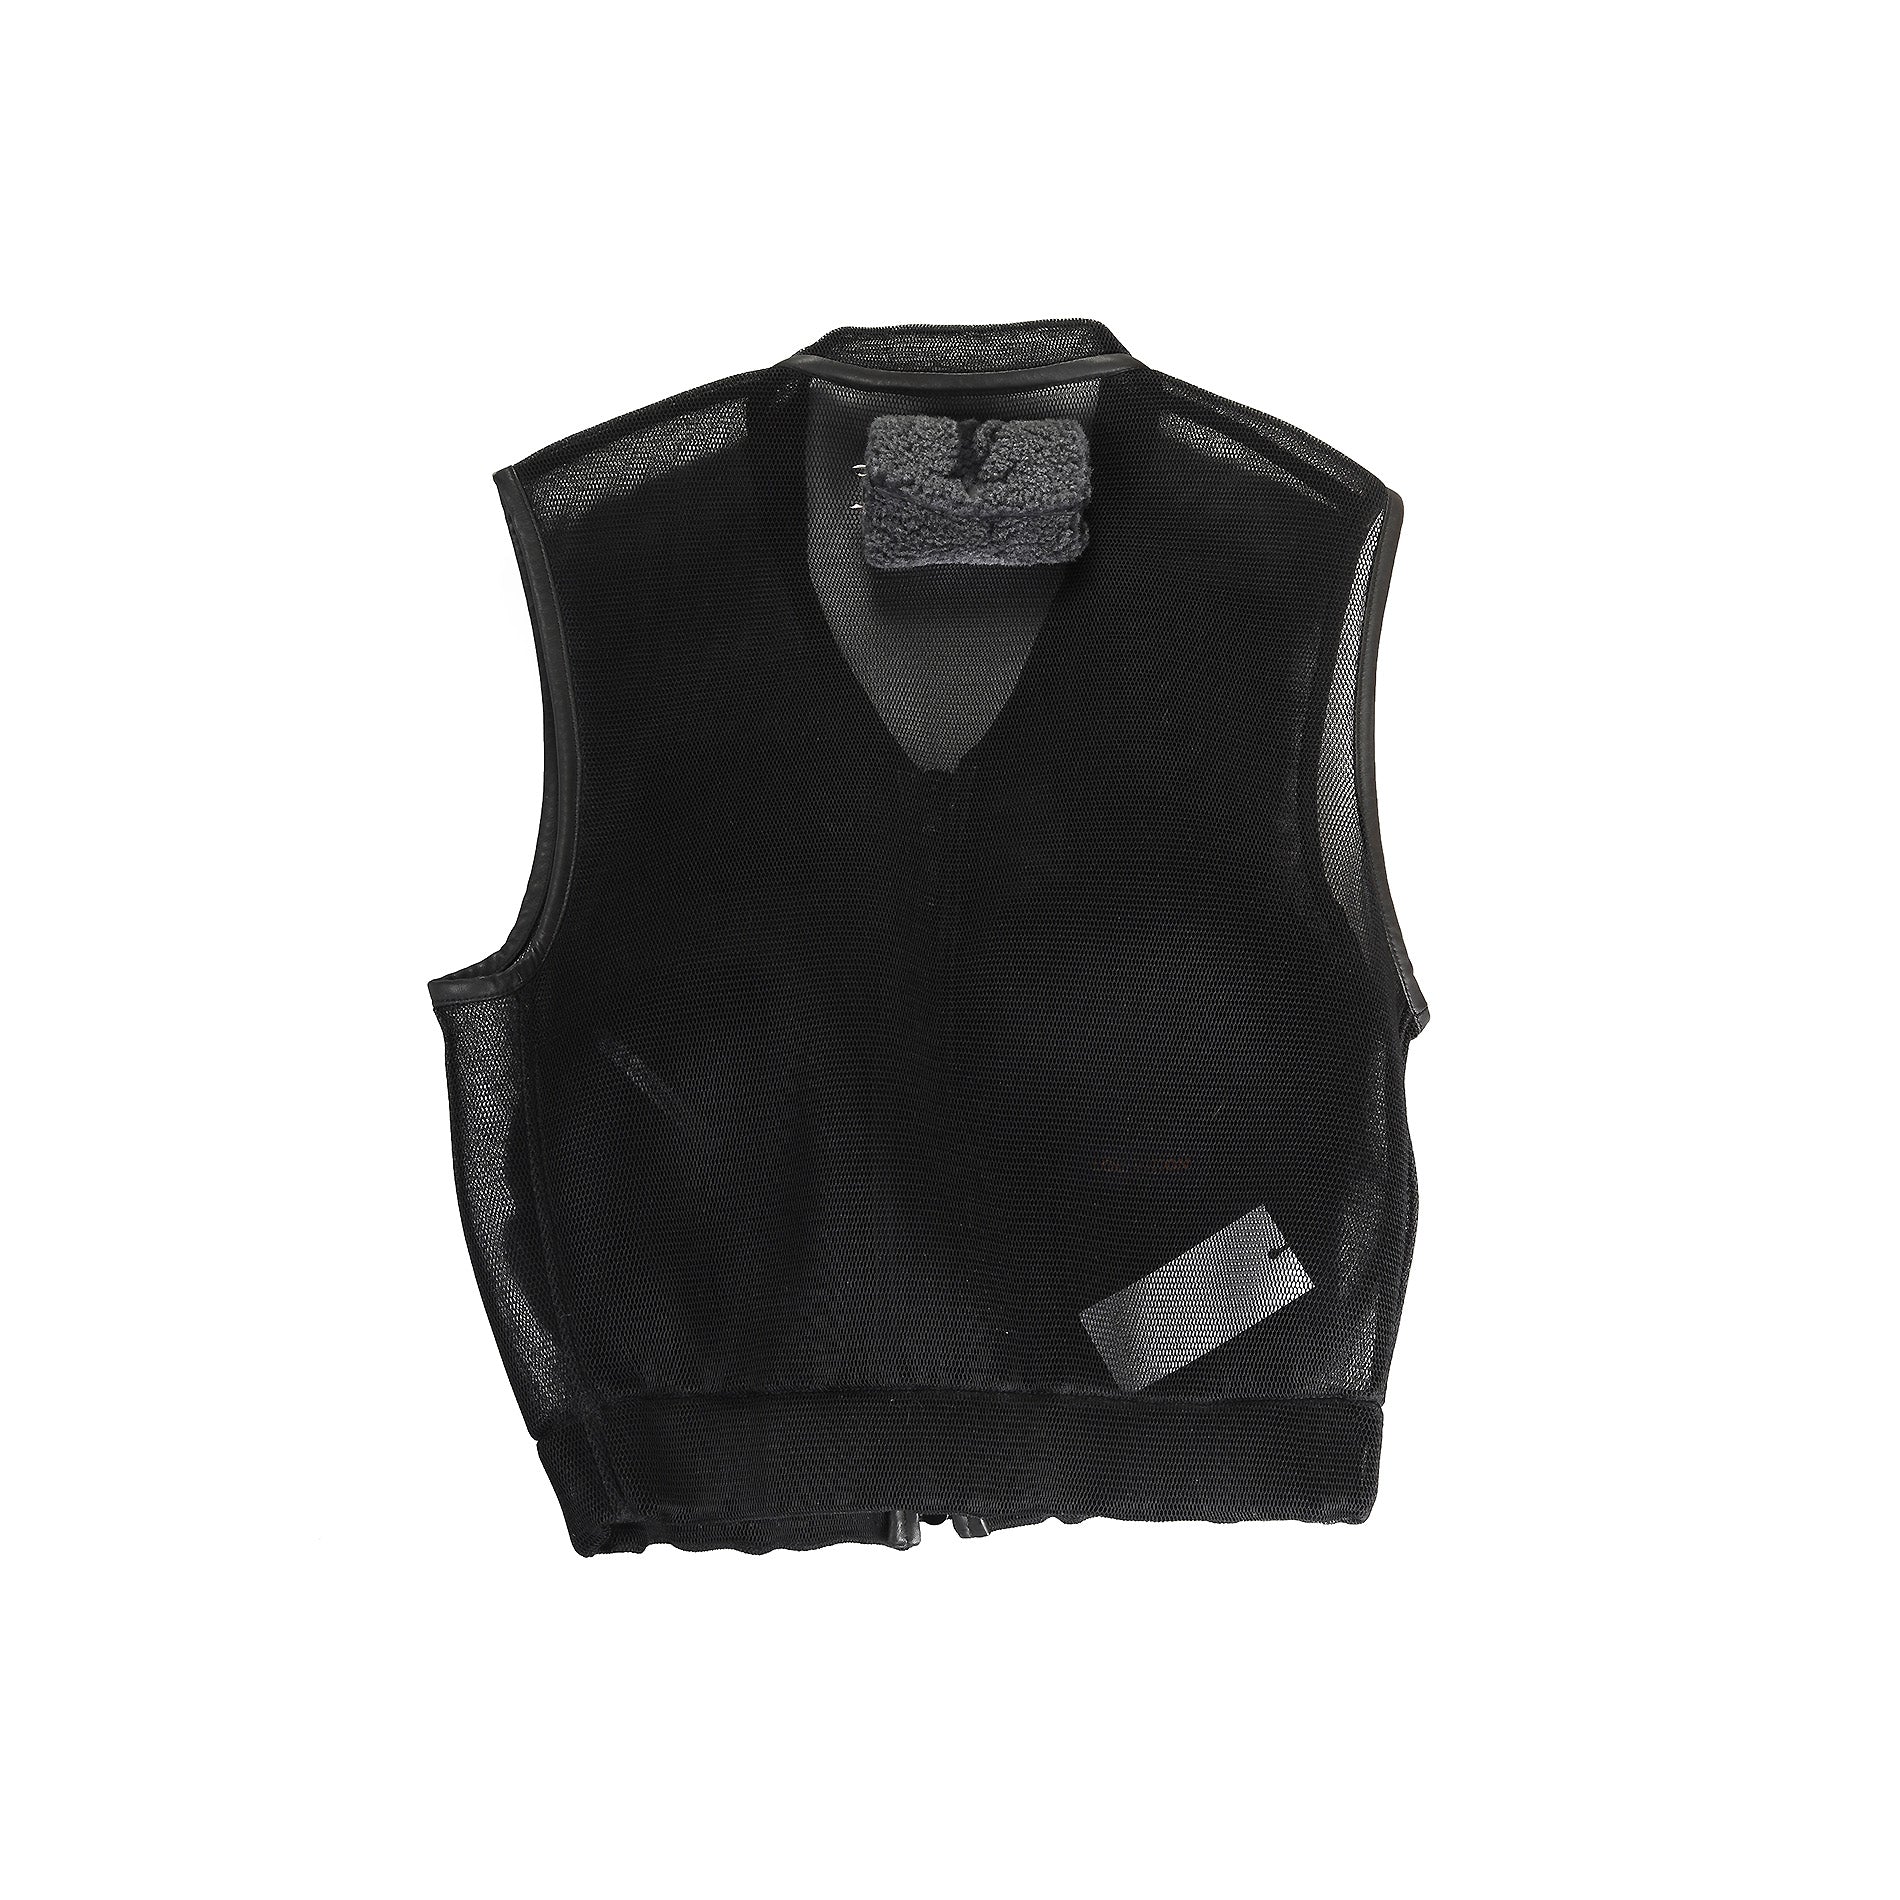 Bullet Proof Louis Vuitton Vest